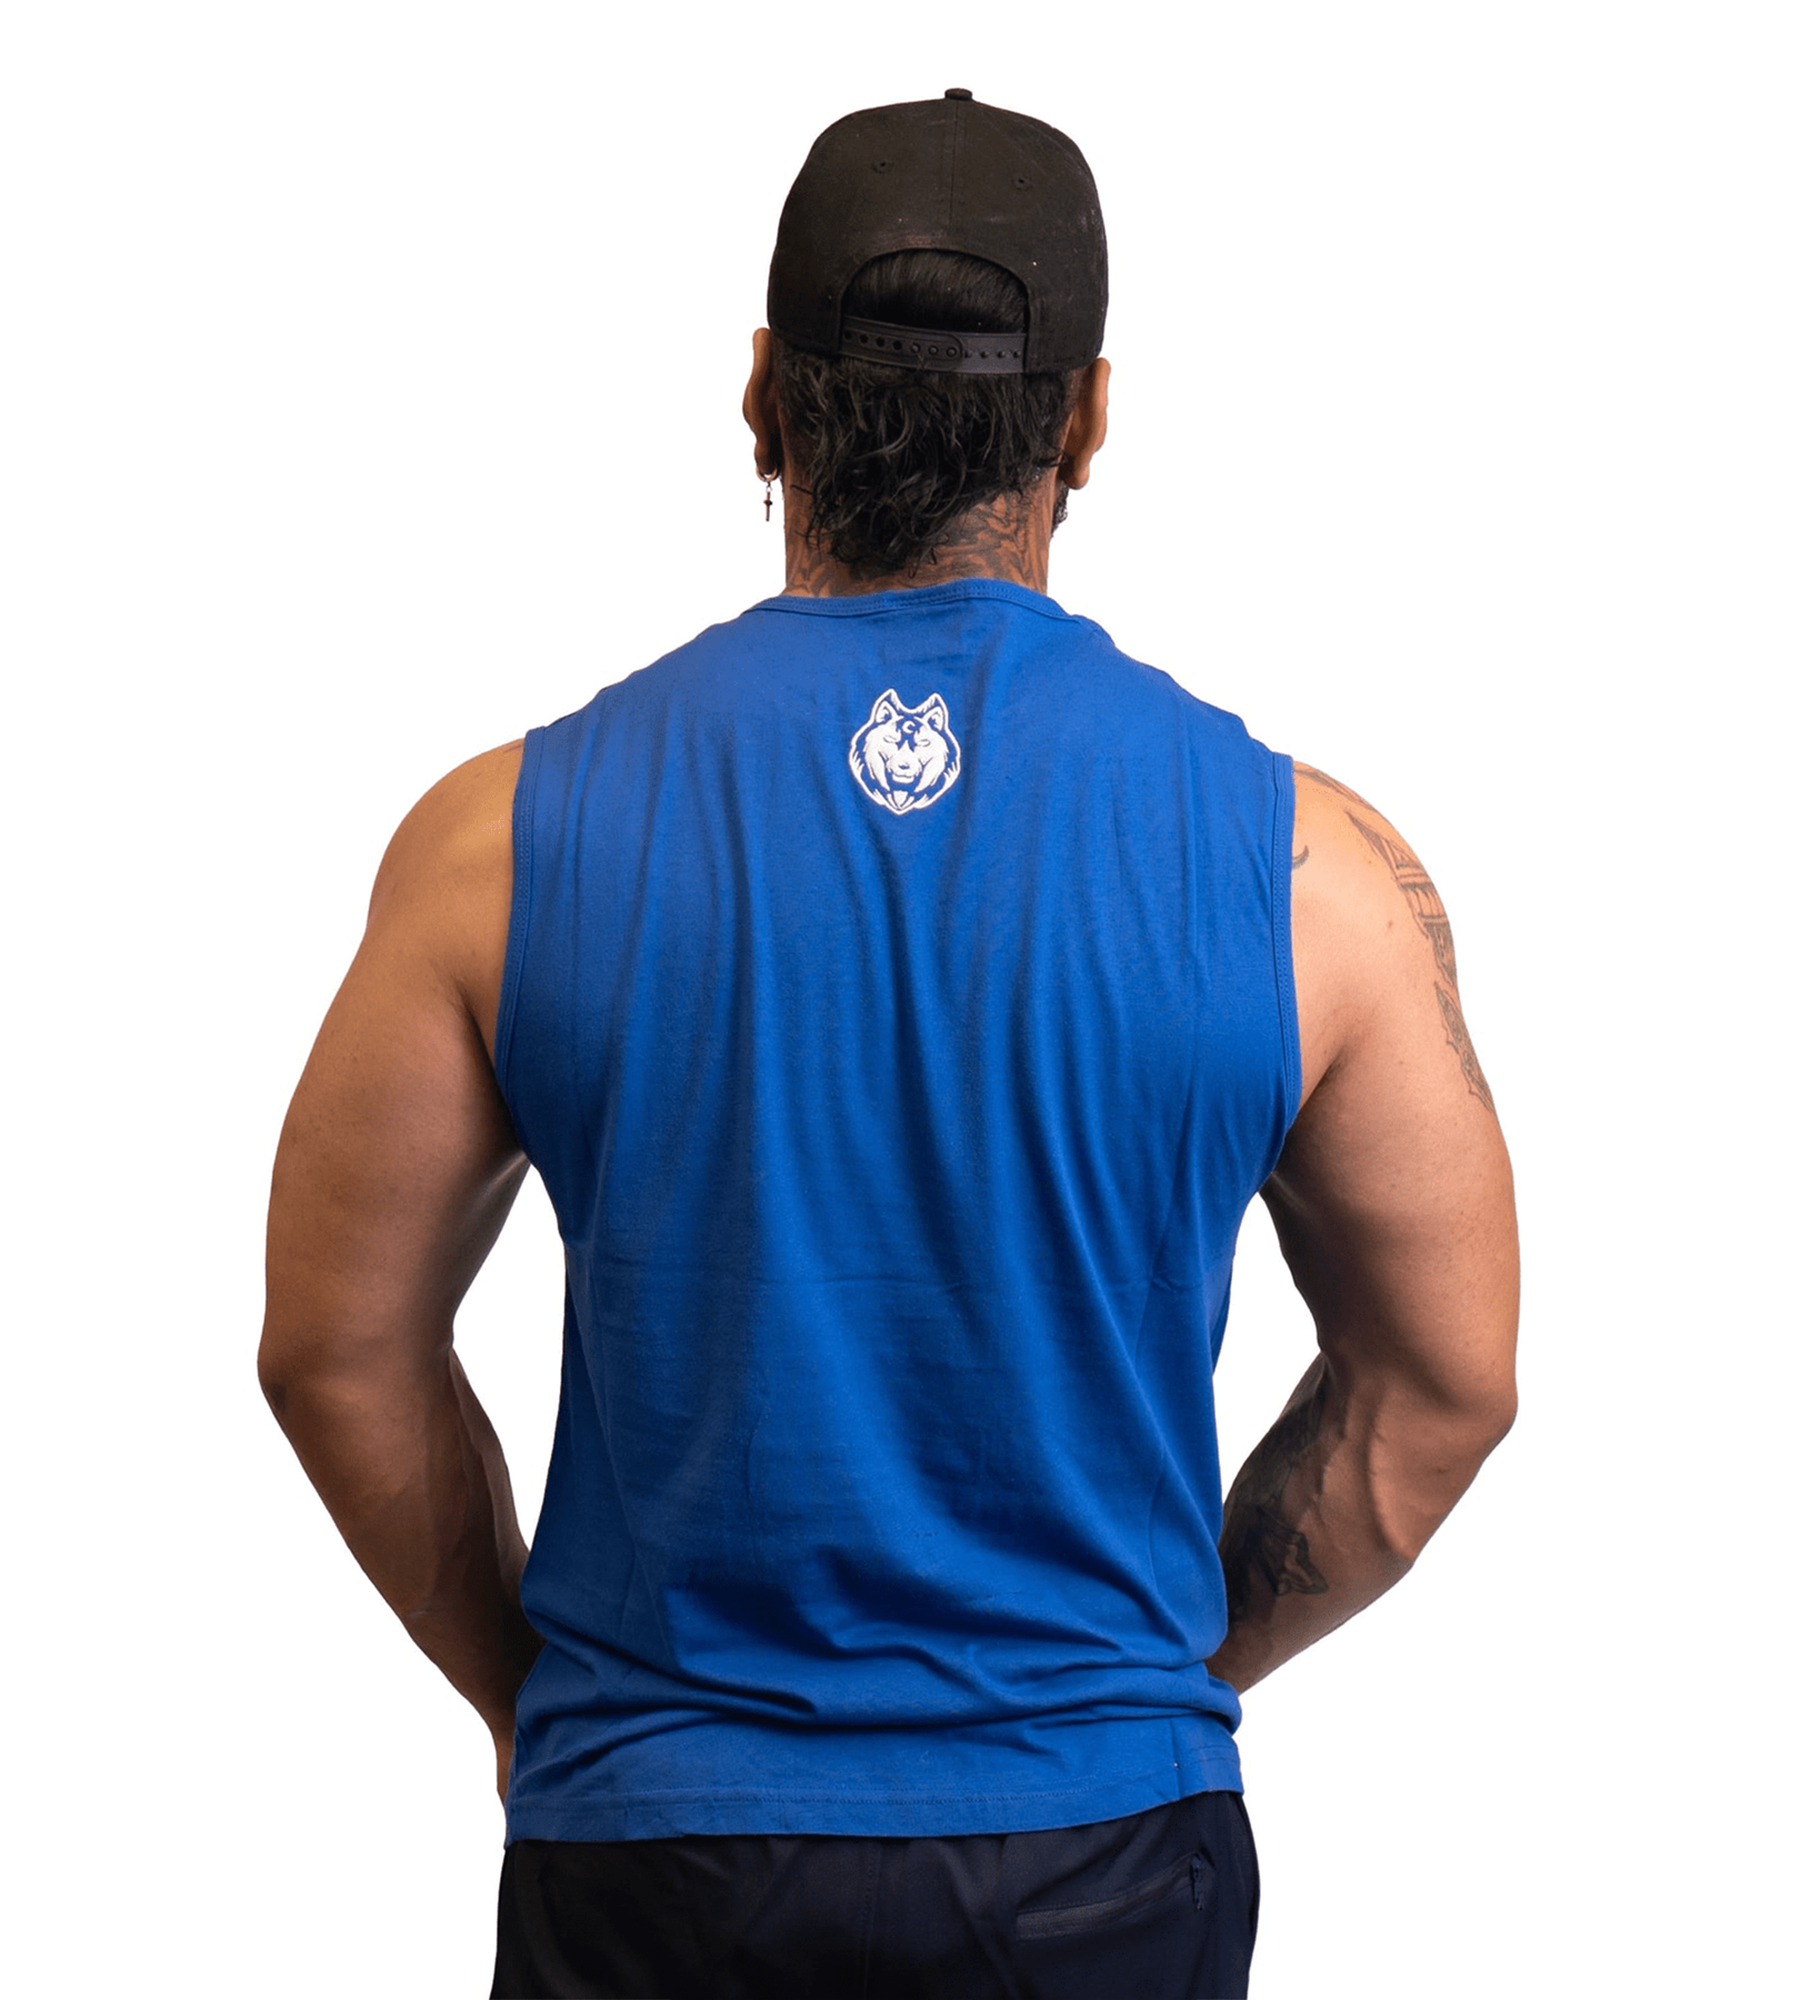 Fitnessfox Blue Muscle Tank